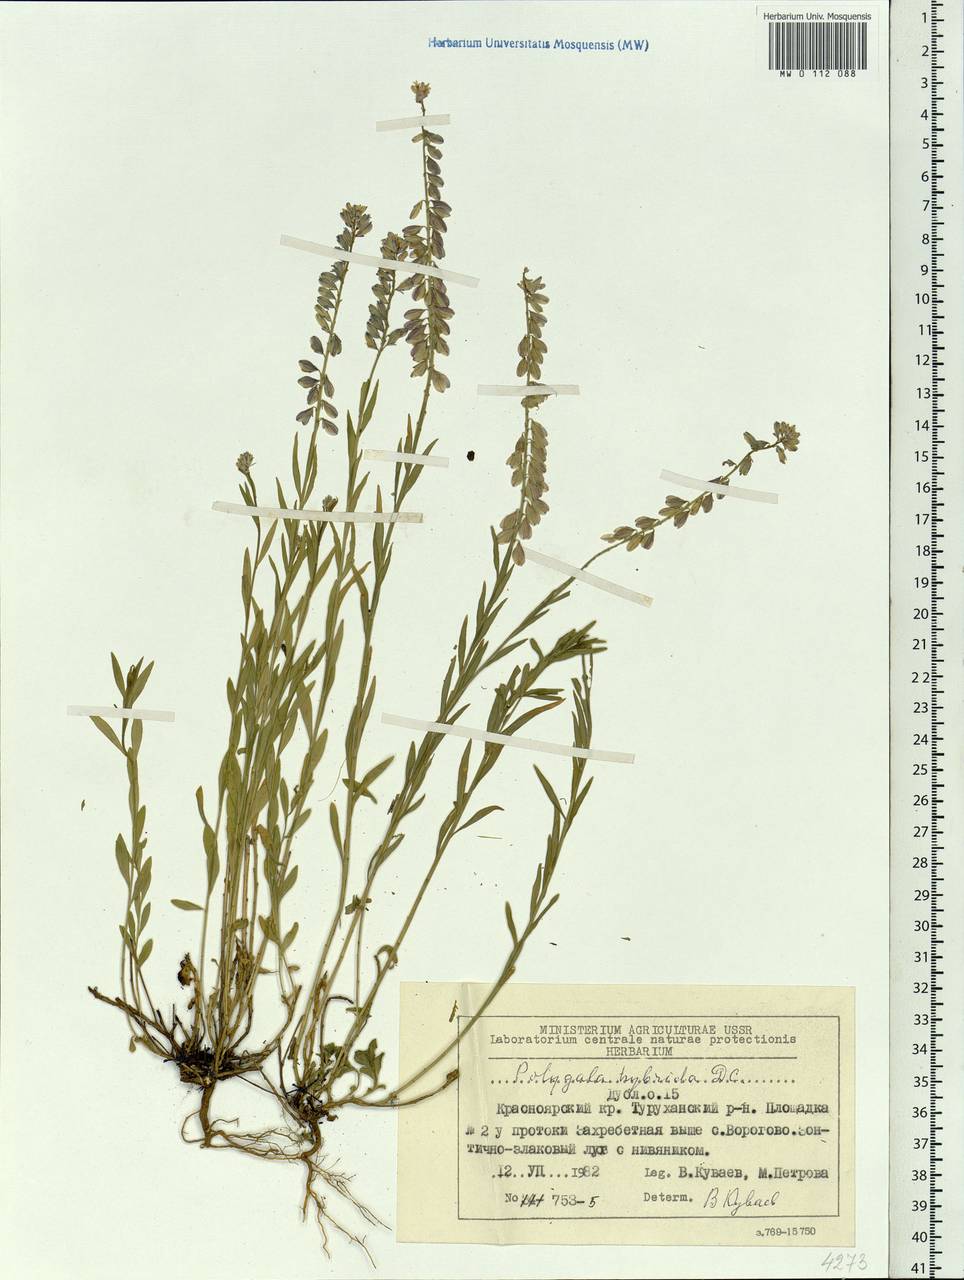 Polygala comosa subsp. comosa, Siberia, Central Siberia (S3) (Russia)